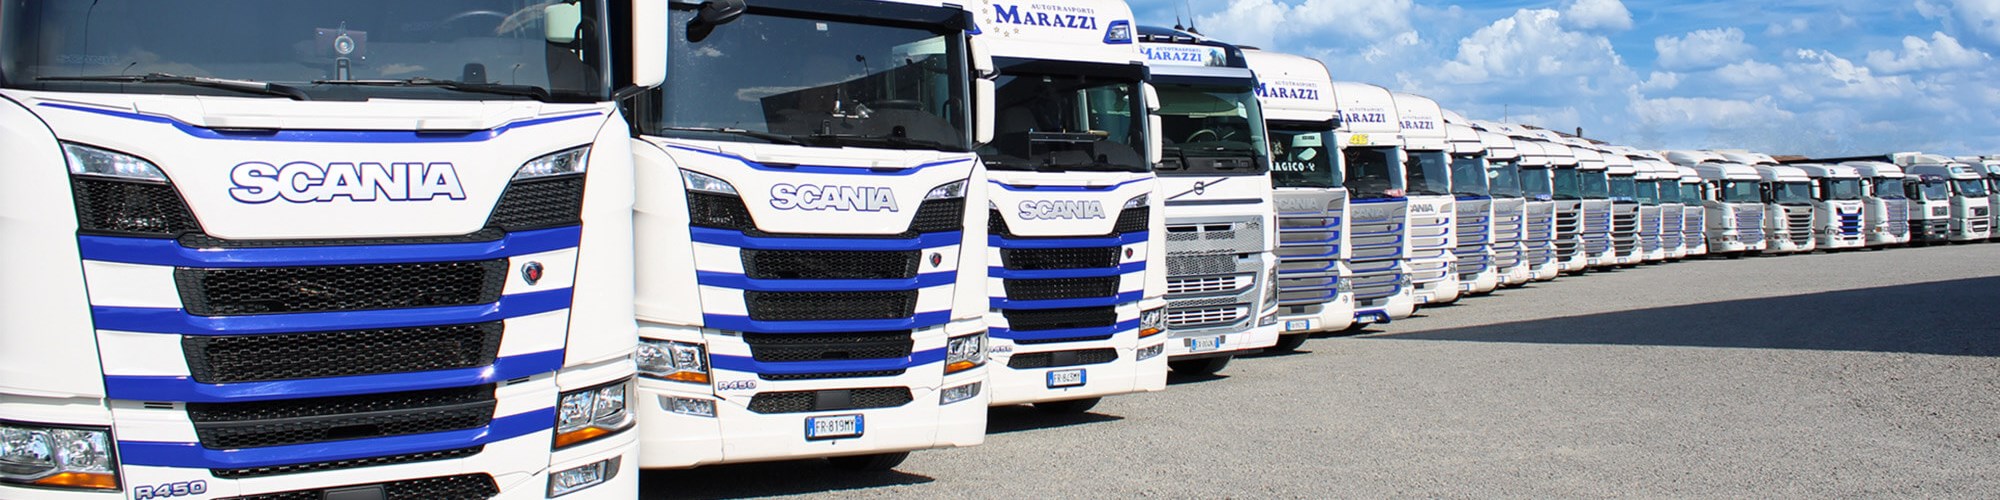 Dettaglio flotta mezzi trasporto merci Marazzi Autotrasporti